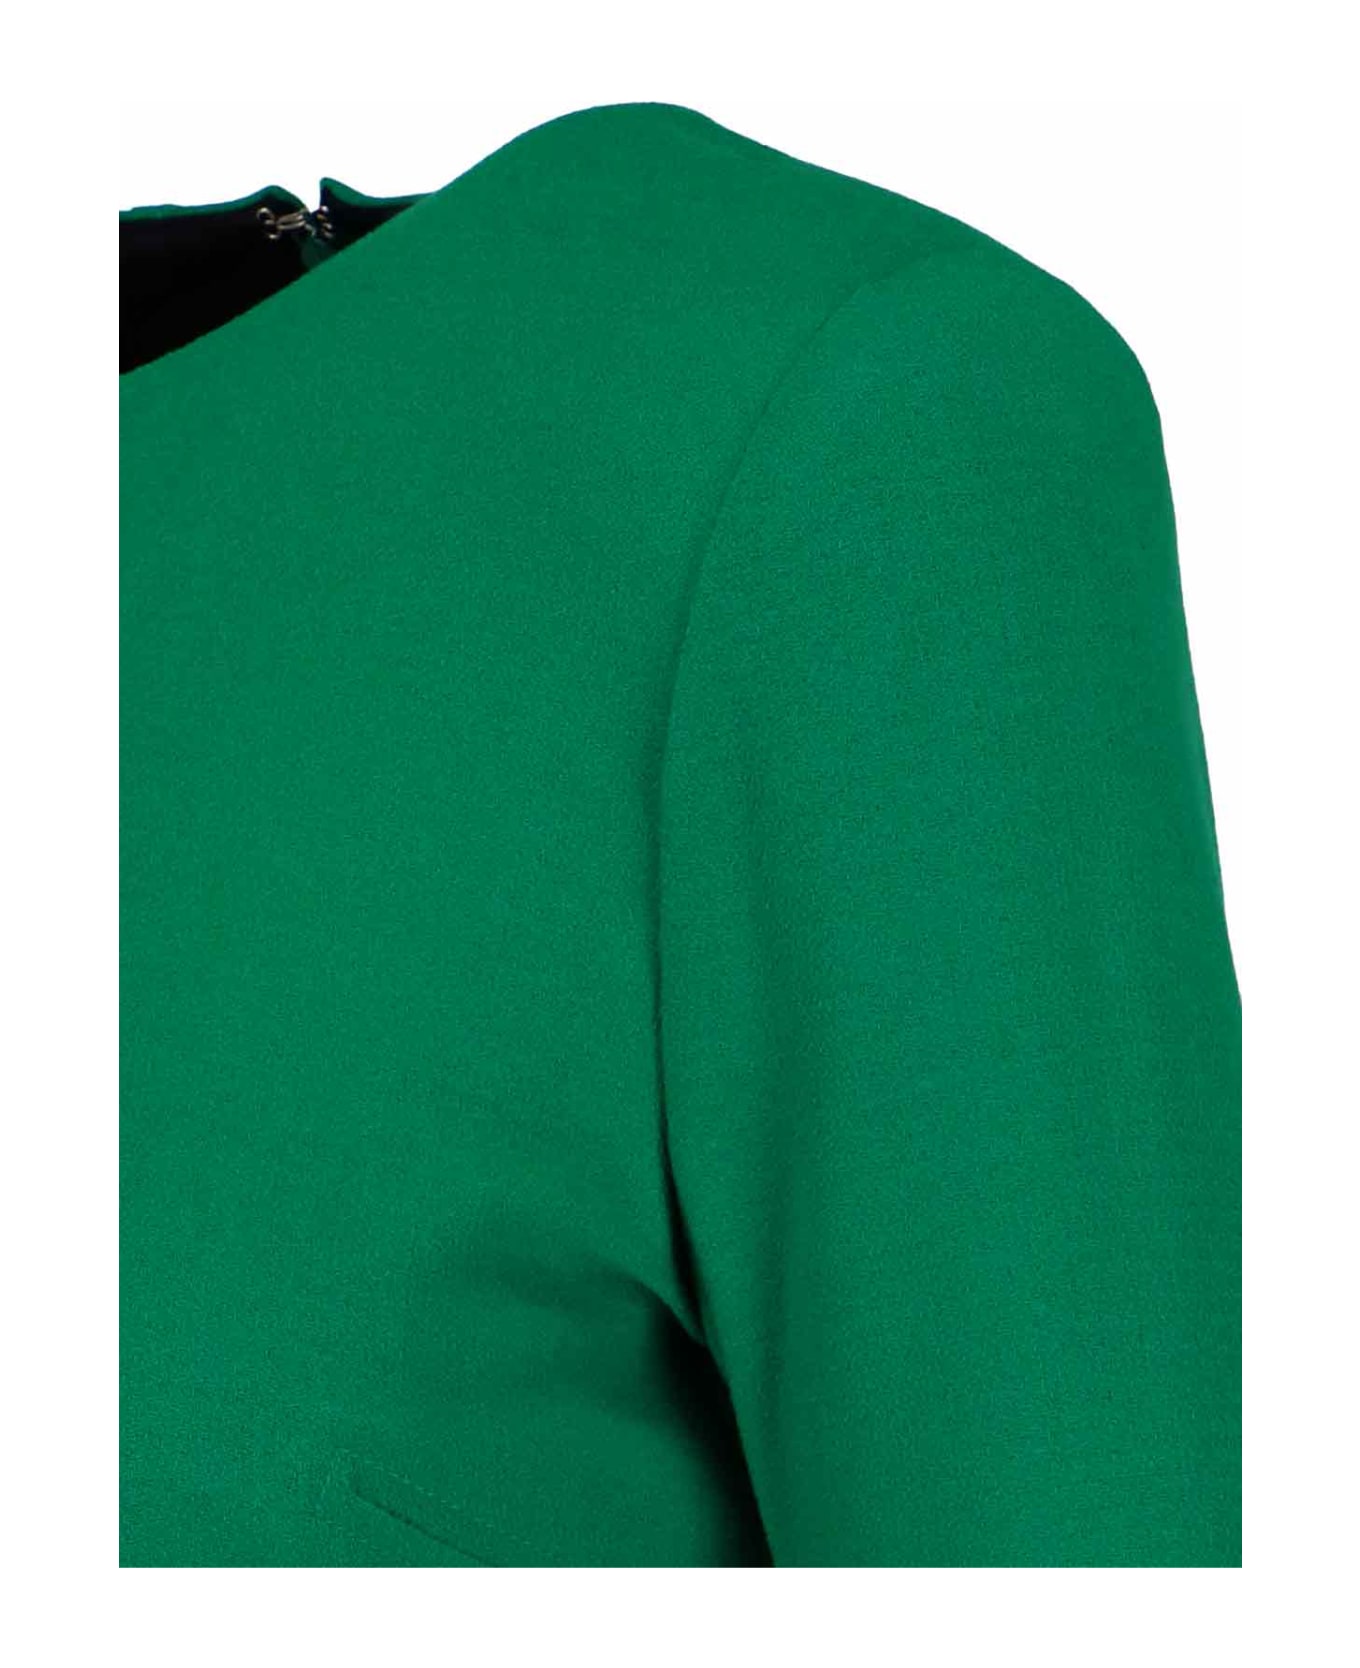 Victoria Beckham Midi Dress - Green